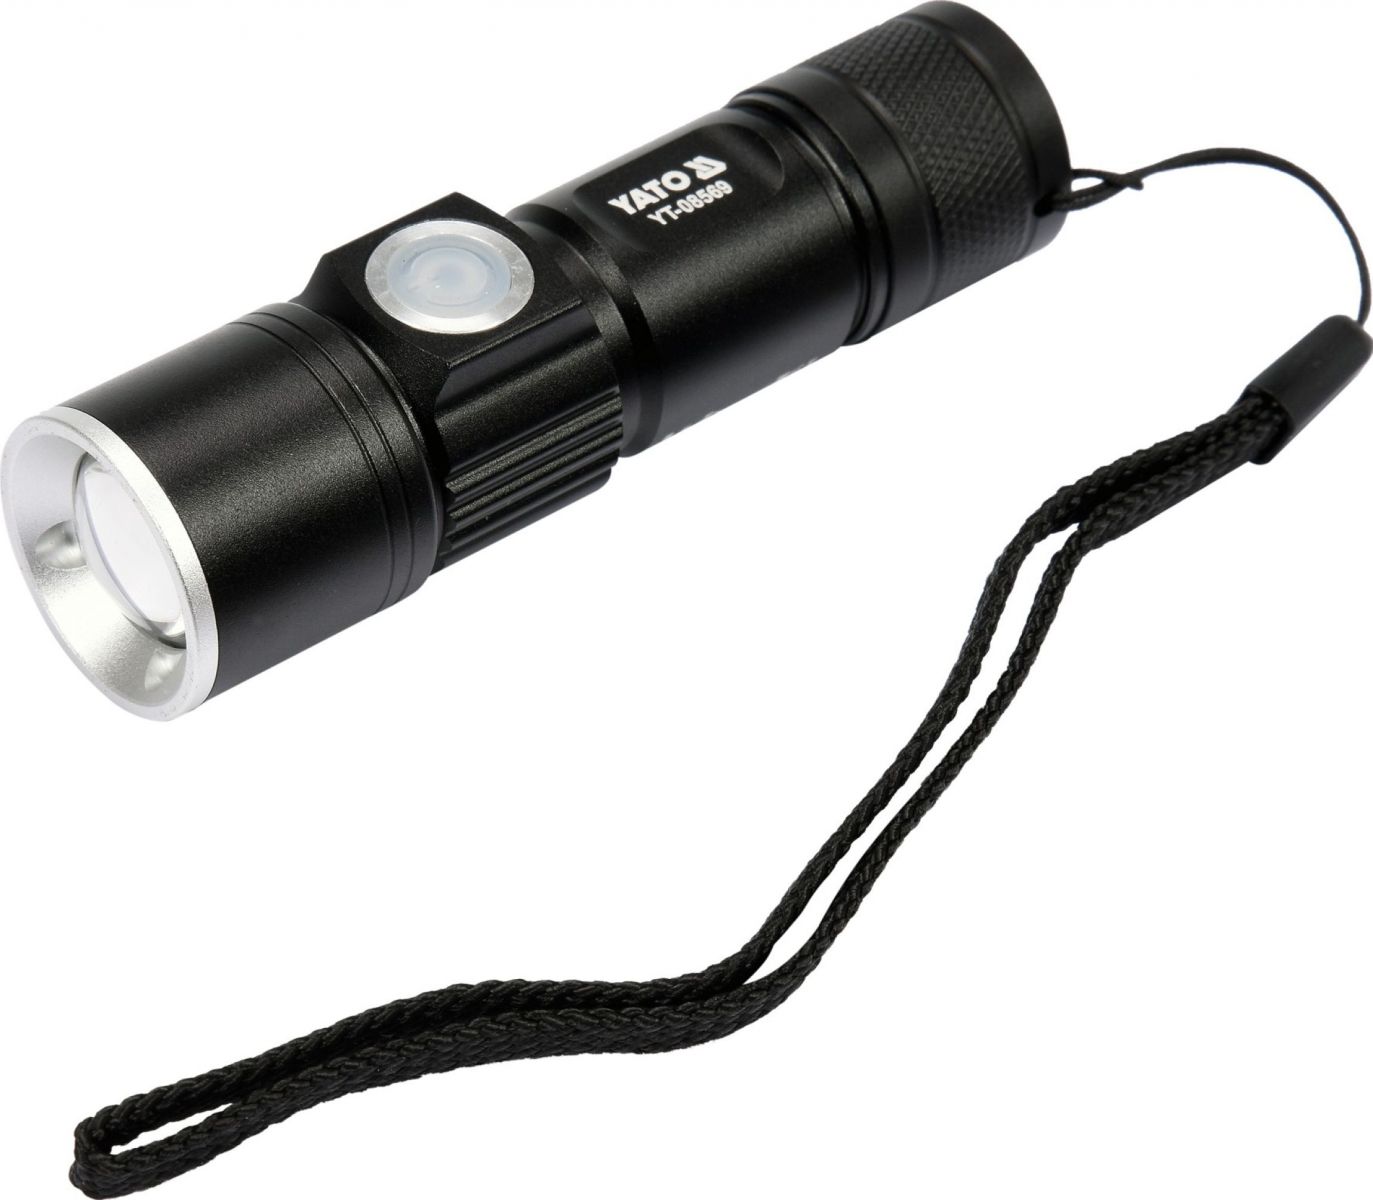 Celokovová LED svítilna XT-E CREE 5W USB, 350 lm, Li-ion světo až do vzdálenosti 150 m Compass